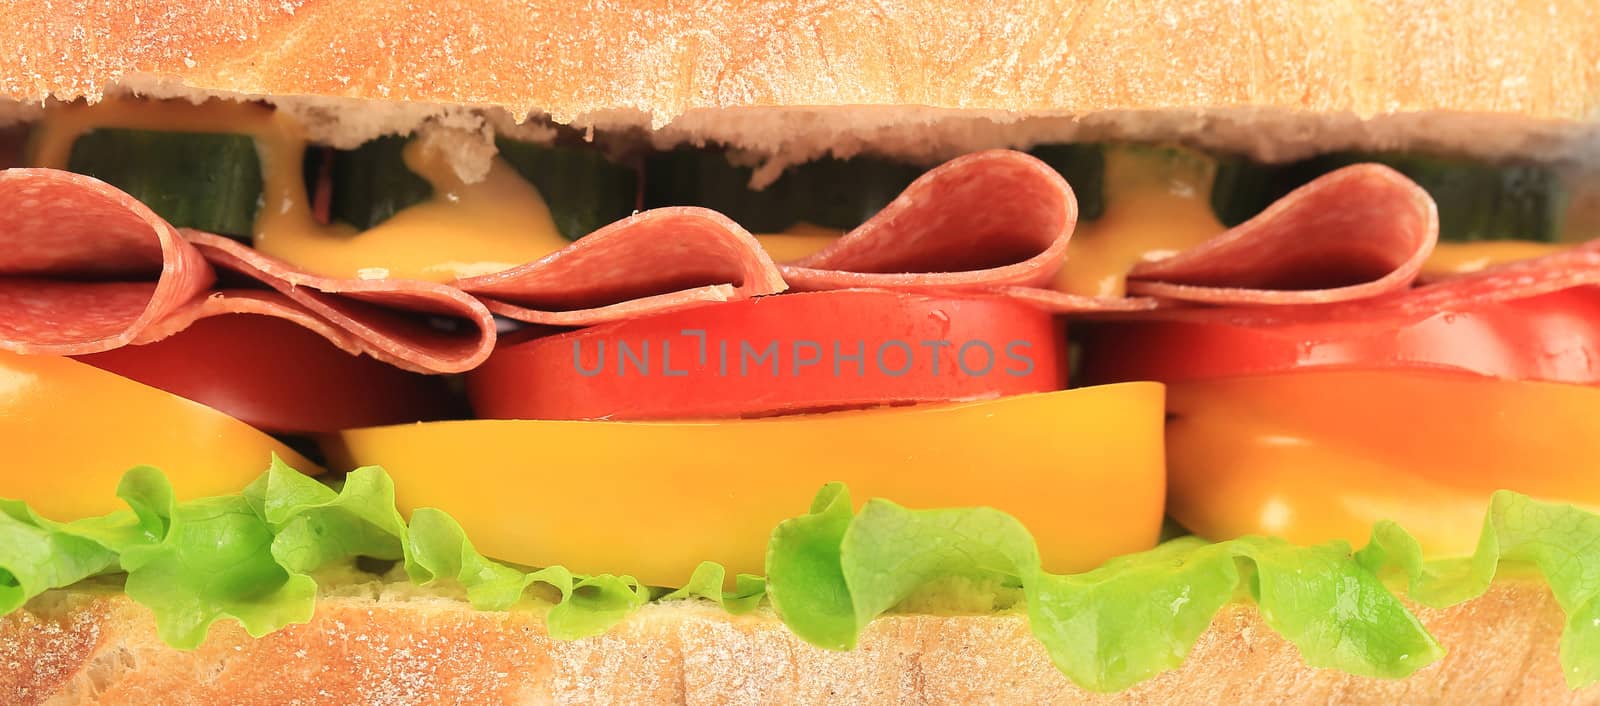 Big fresh sandwich. Close up. by indigolotos